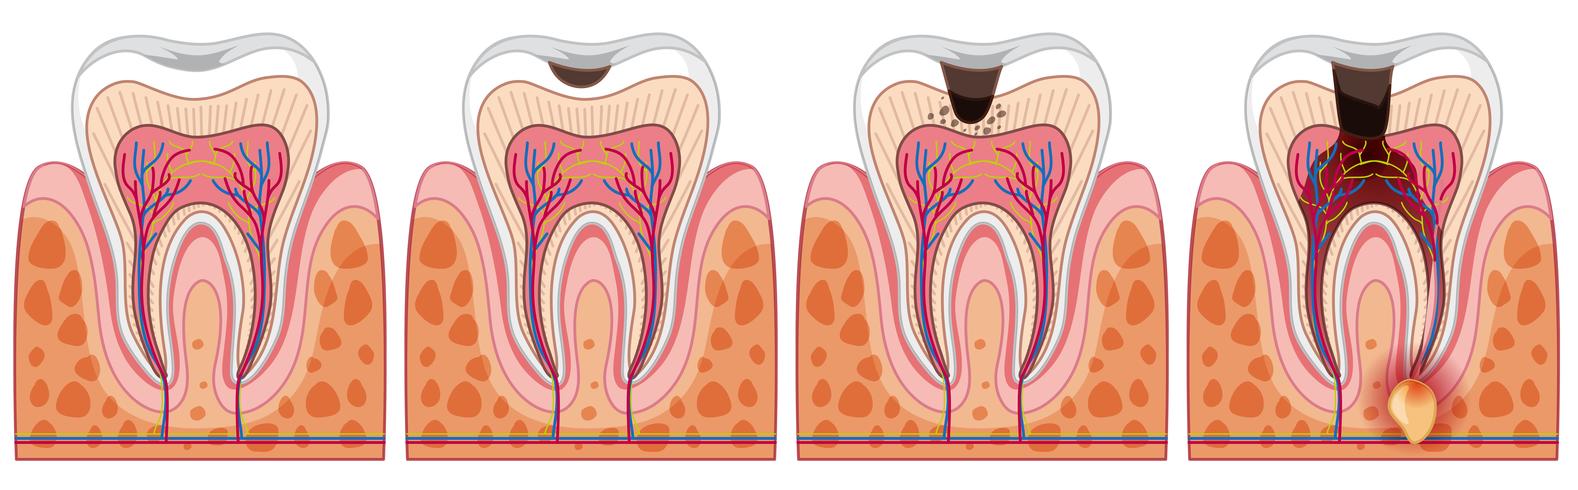 Eine Reihe von menschlichen Zahn vektor